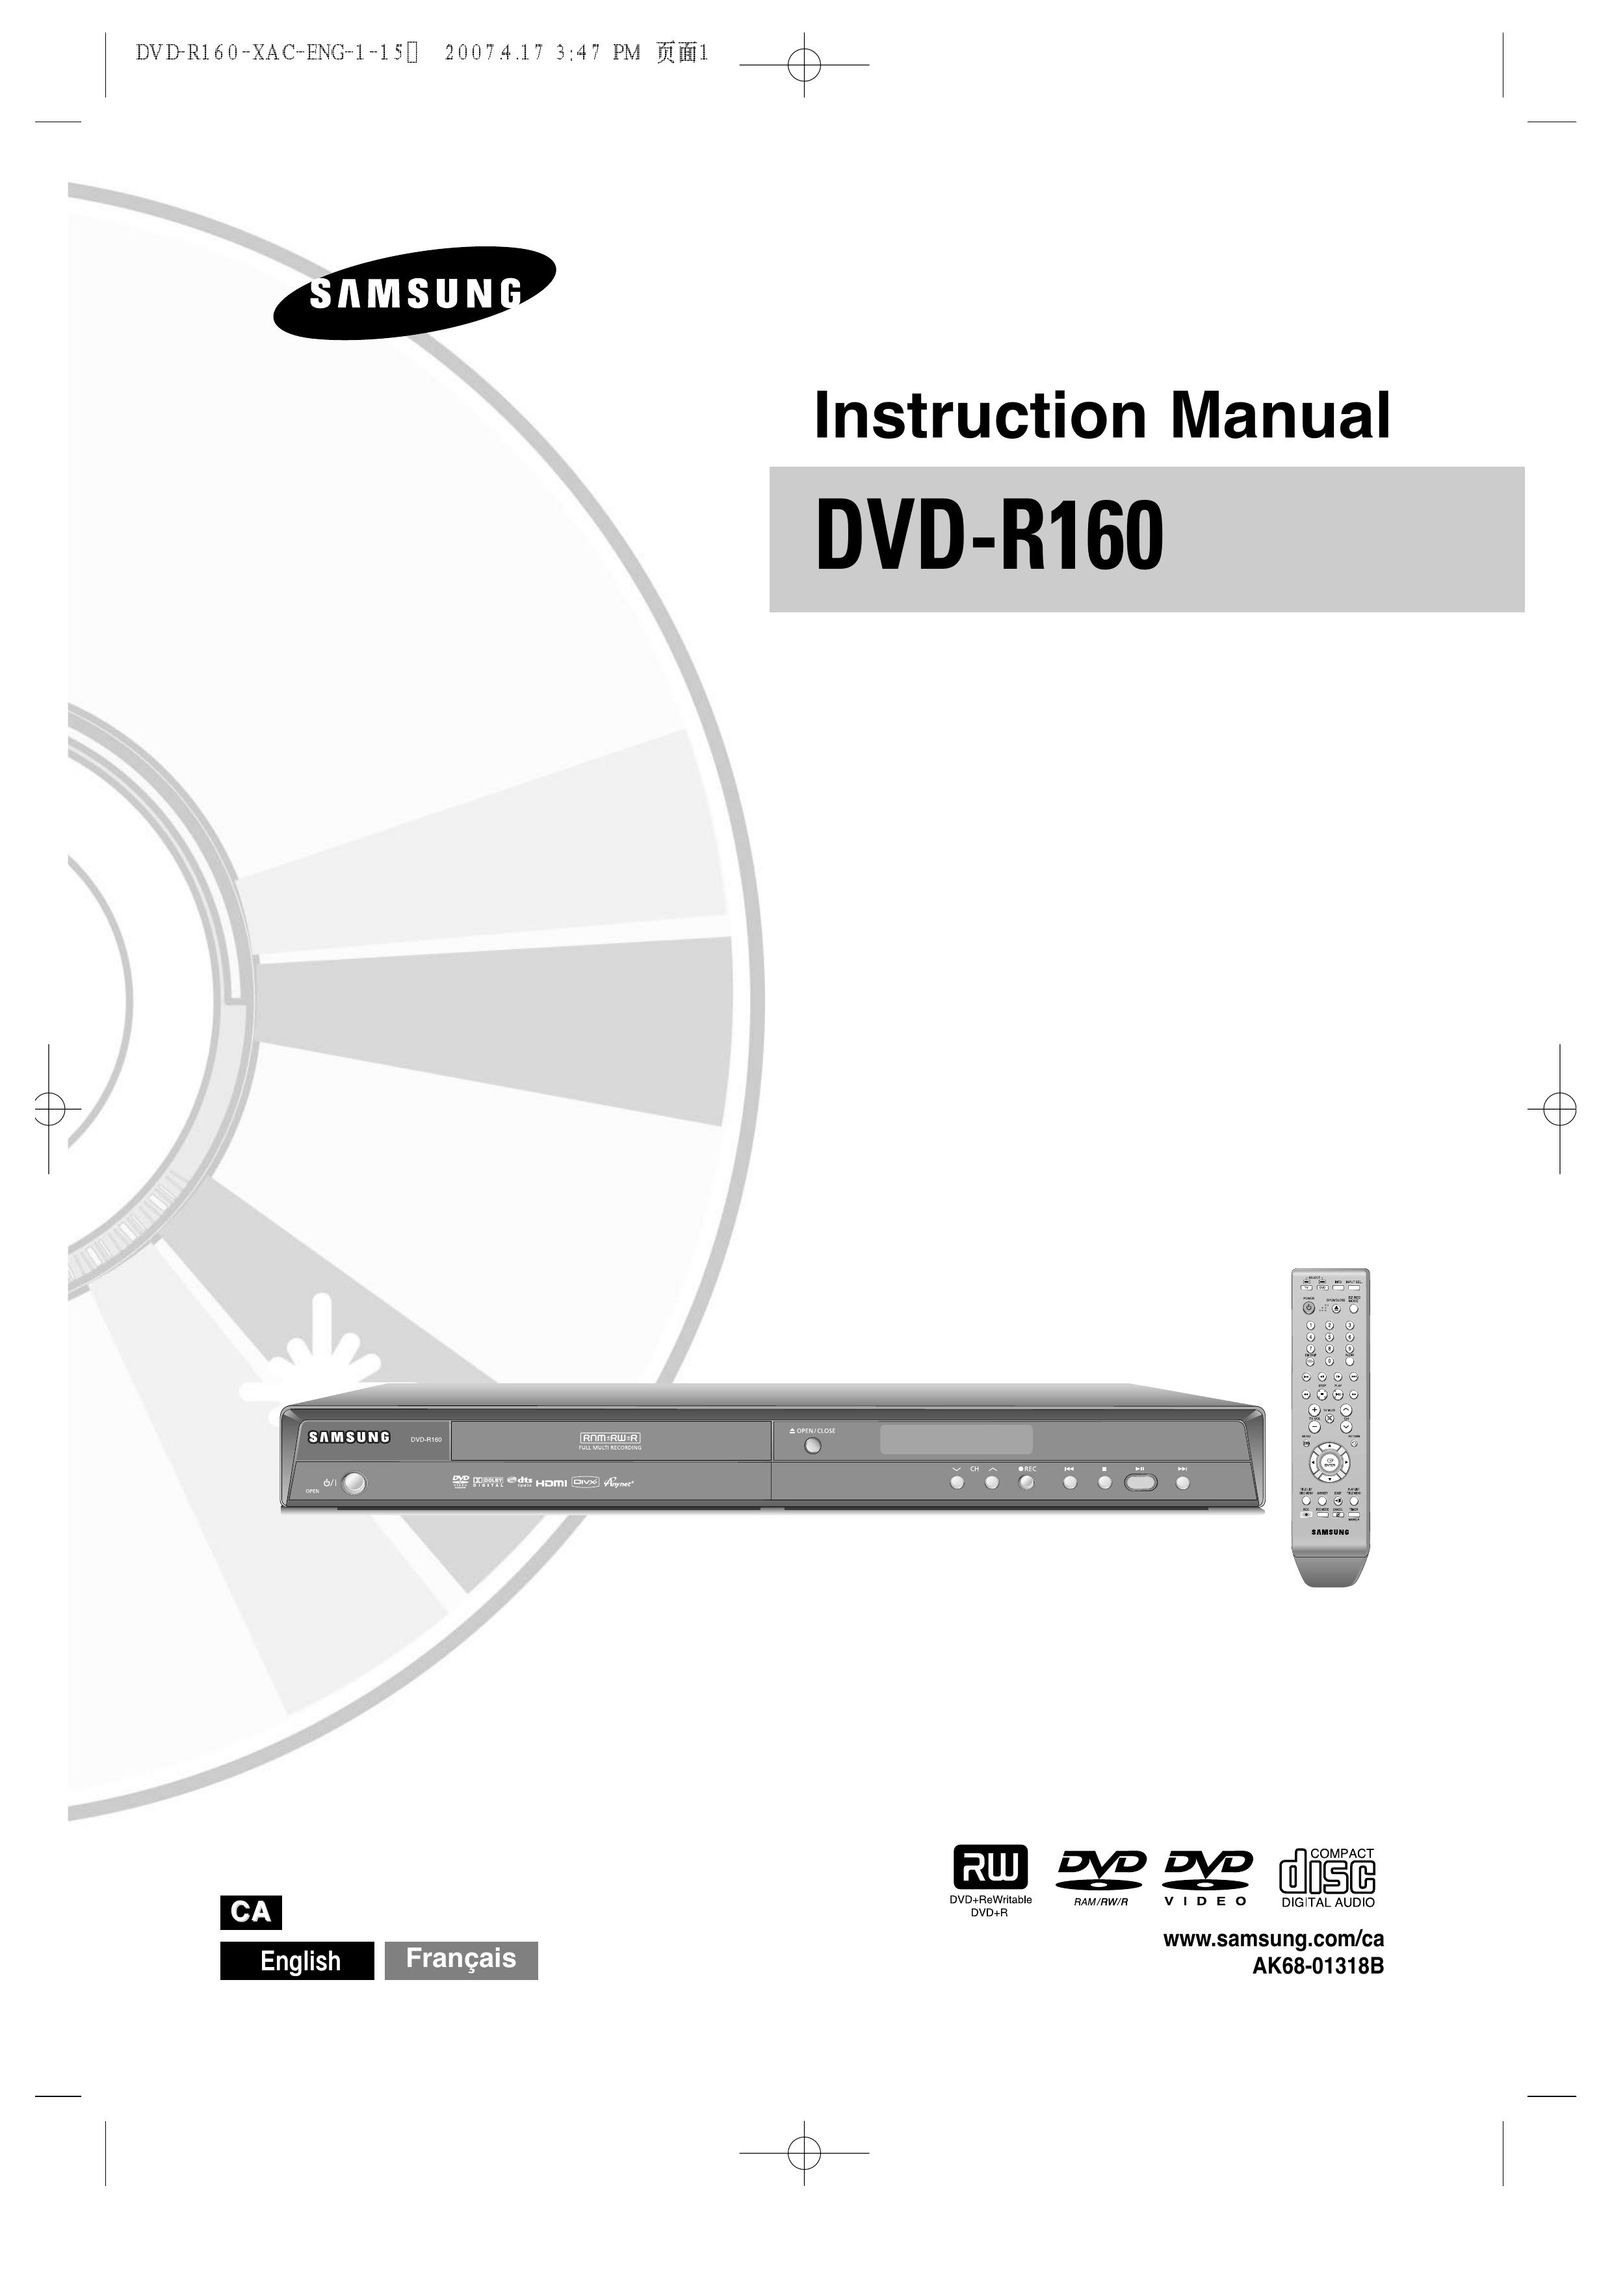 Samsung AK68-01318B DVD Recorder User Manual